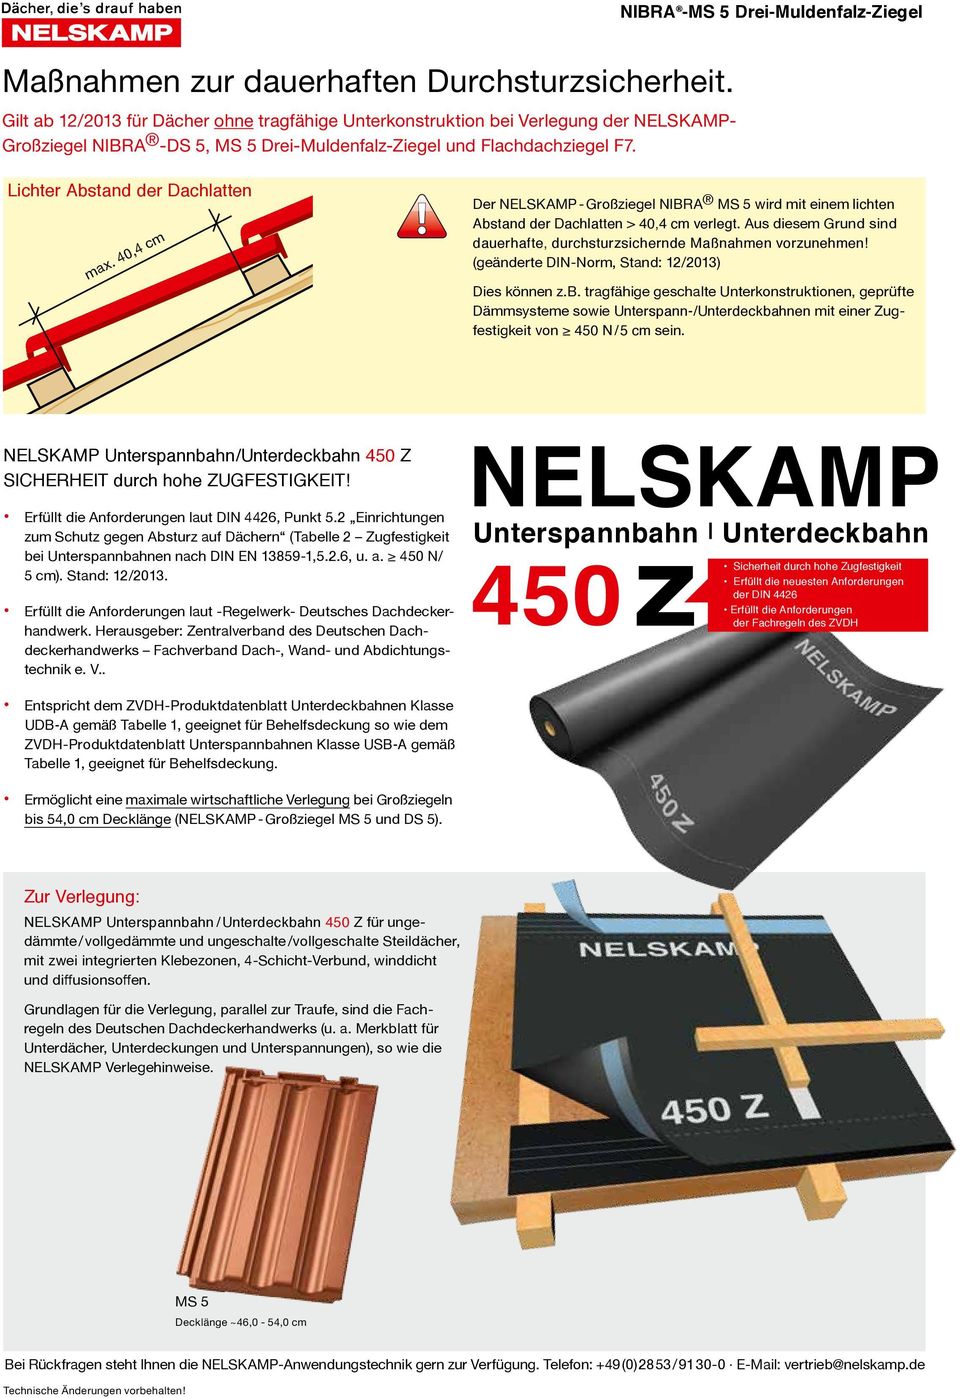 40,4 cm Der NELSKAMP - Großziegel NIBRA MS 5 wird mit einem lichten Abstand der Dachlatten > 40,4 cm verlegt. Aus diesem Grund sind dauerhafte, durchsturzsichernde Maßnahmen vorzunehmen!